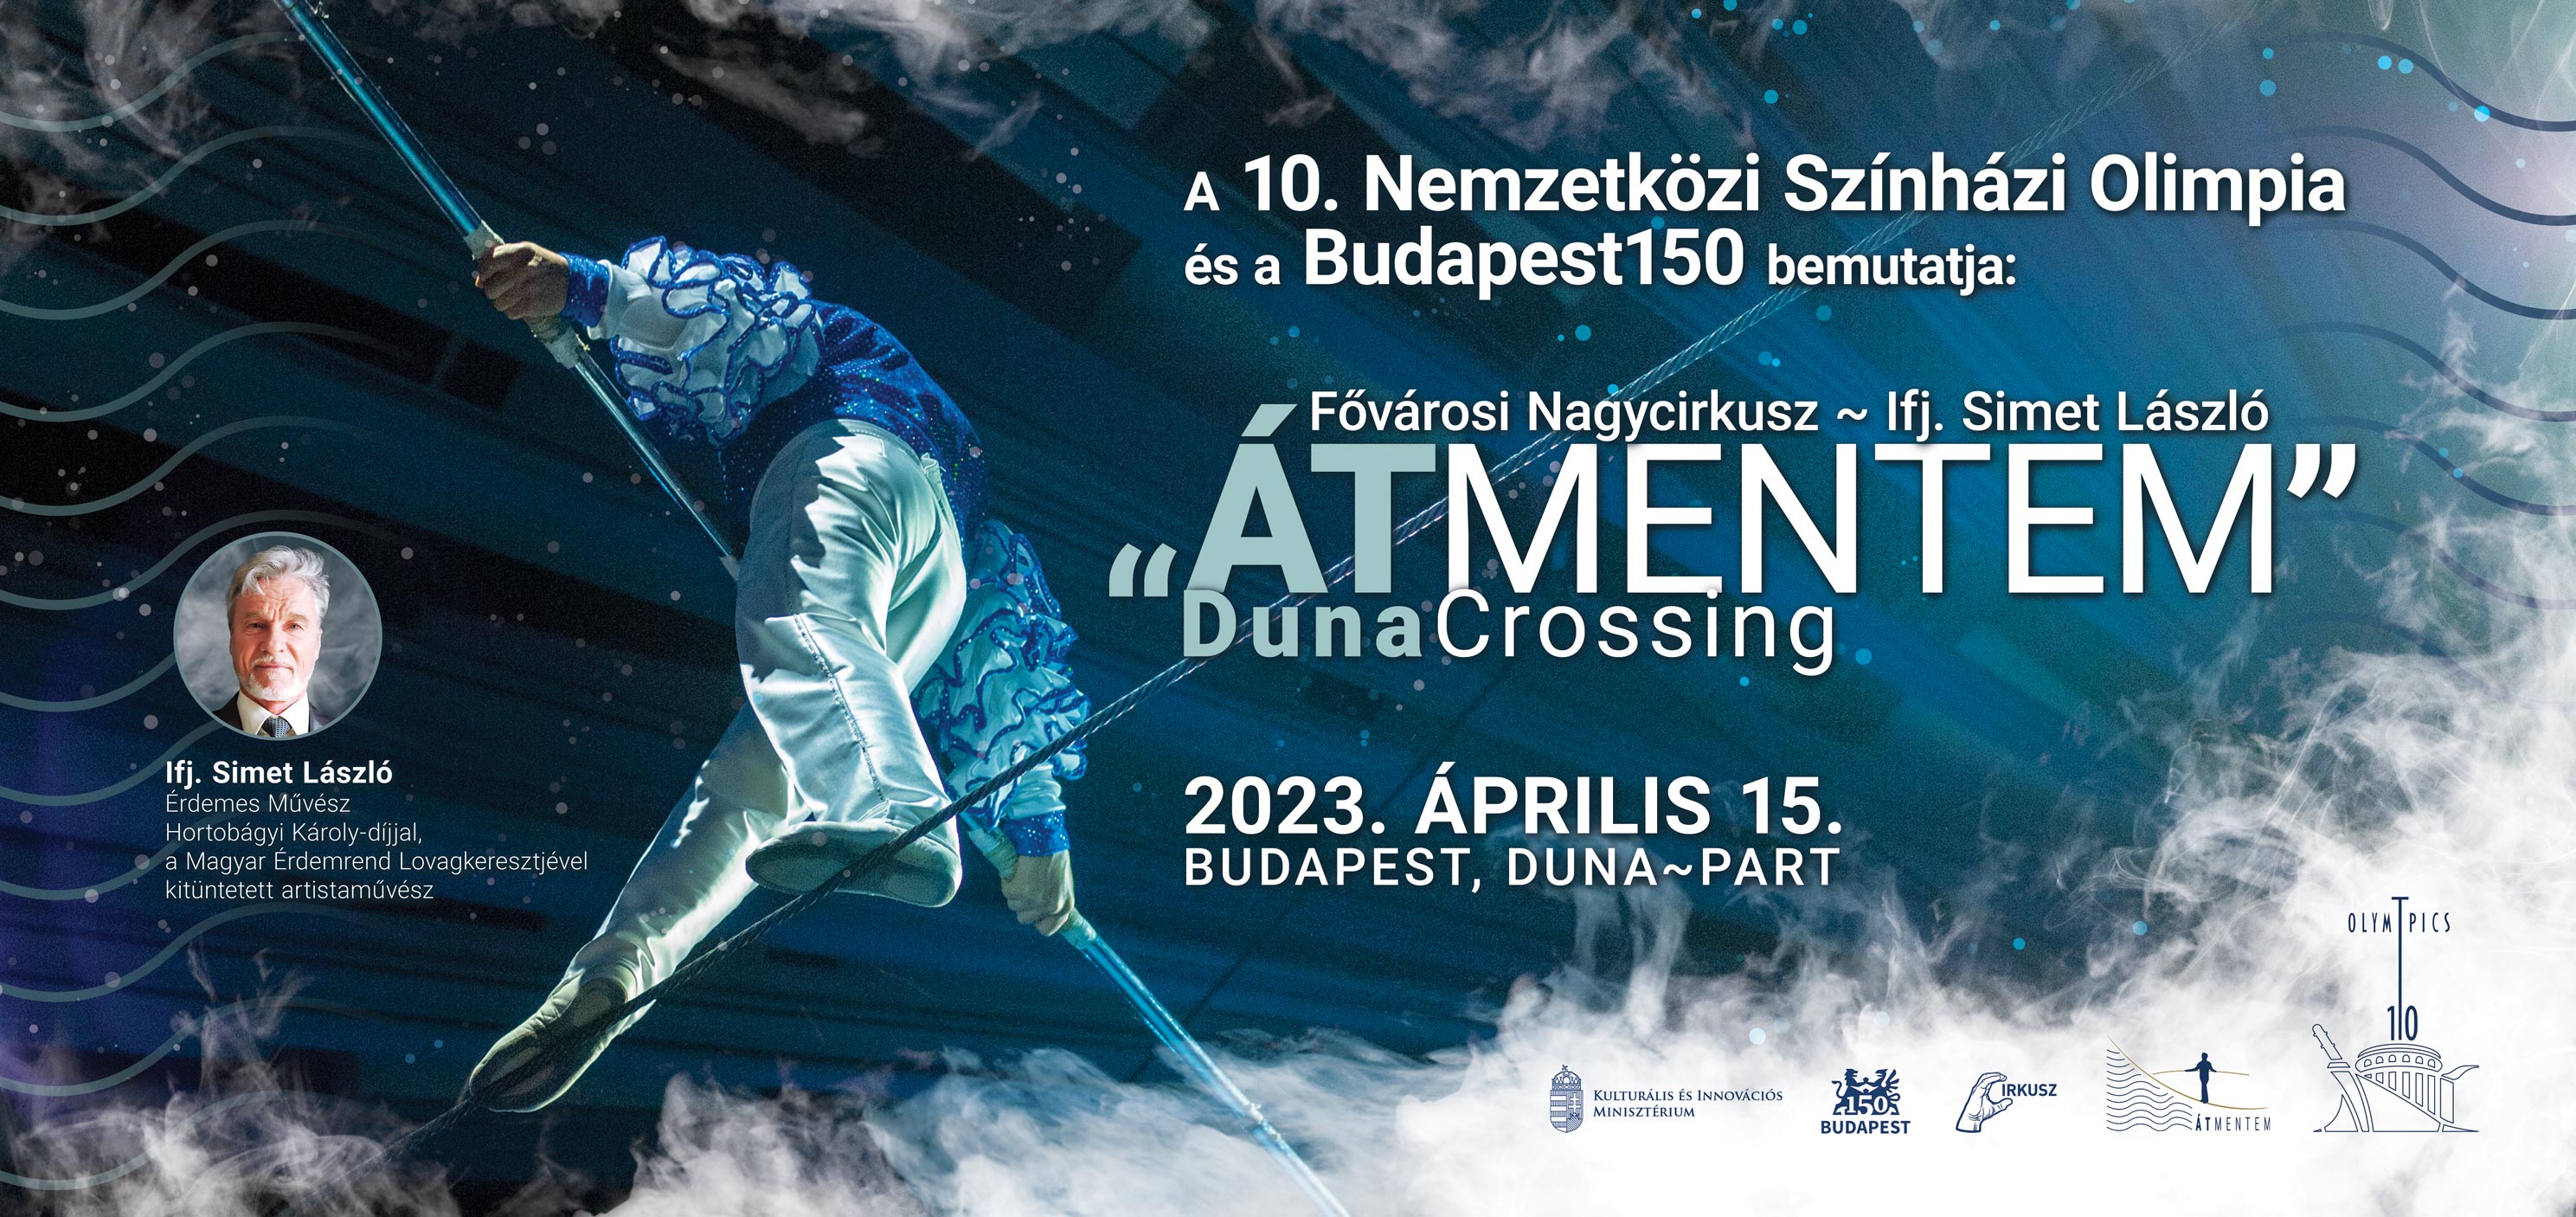 Átmentem - Artist walks a tightrope across the Danube - Fővárosi Nagycirkusz